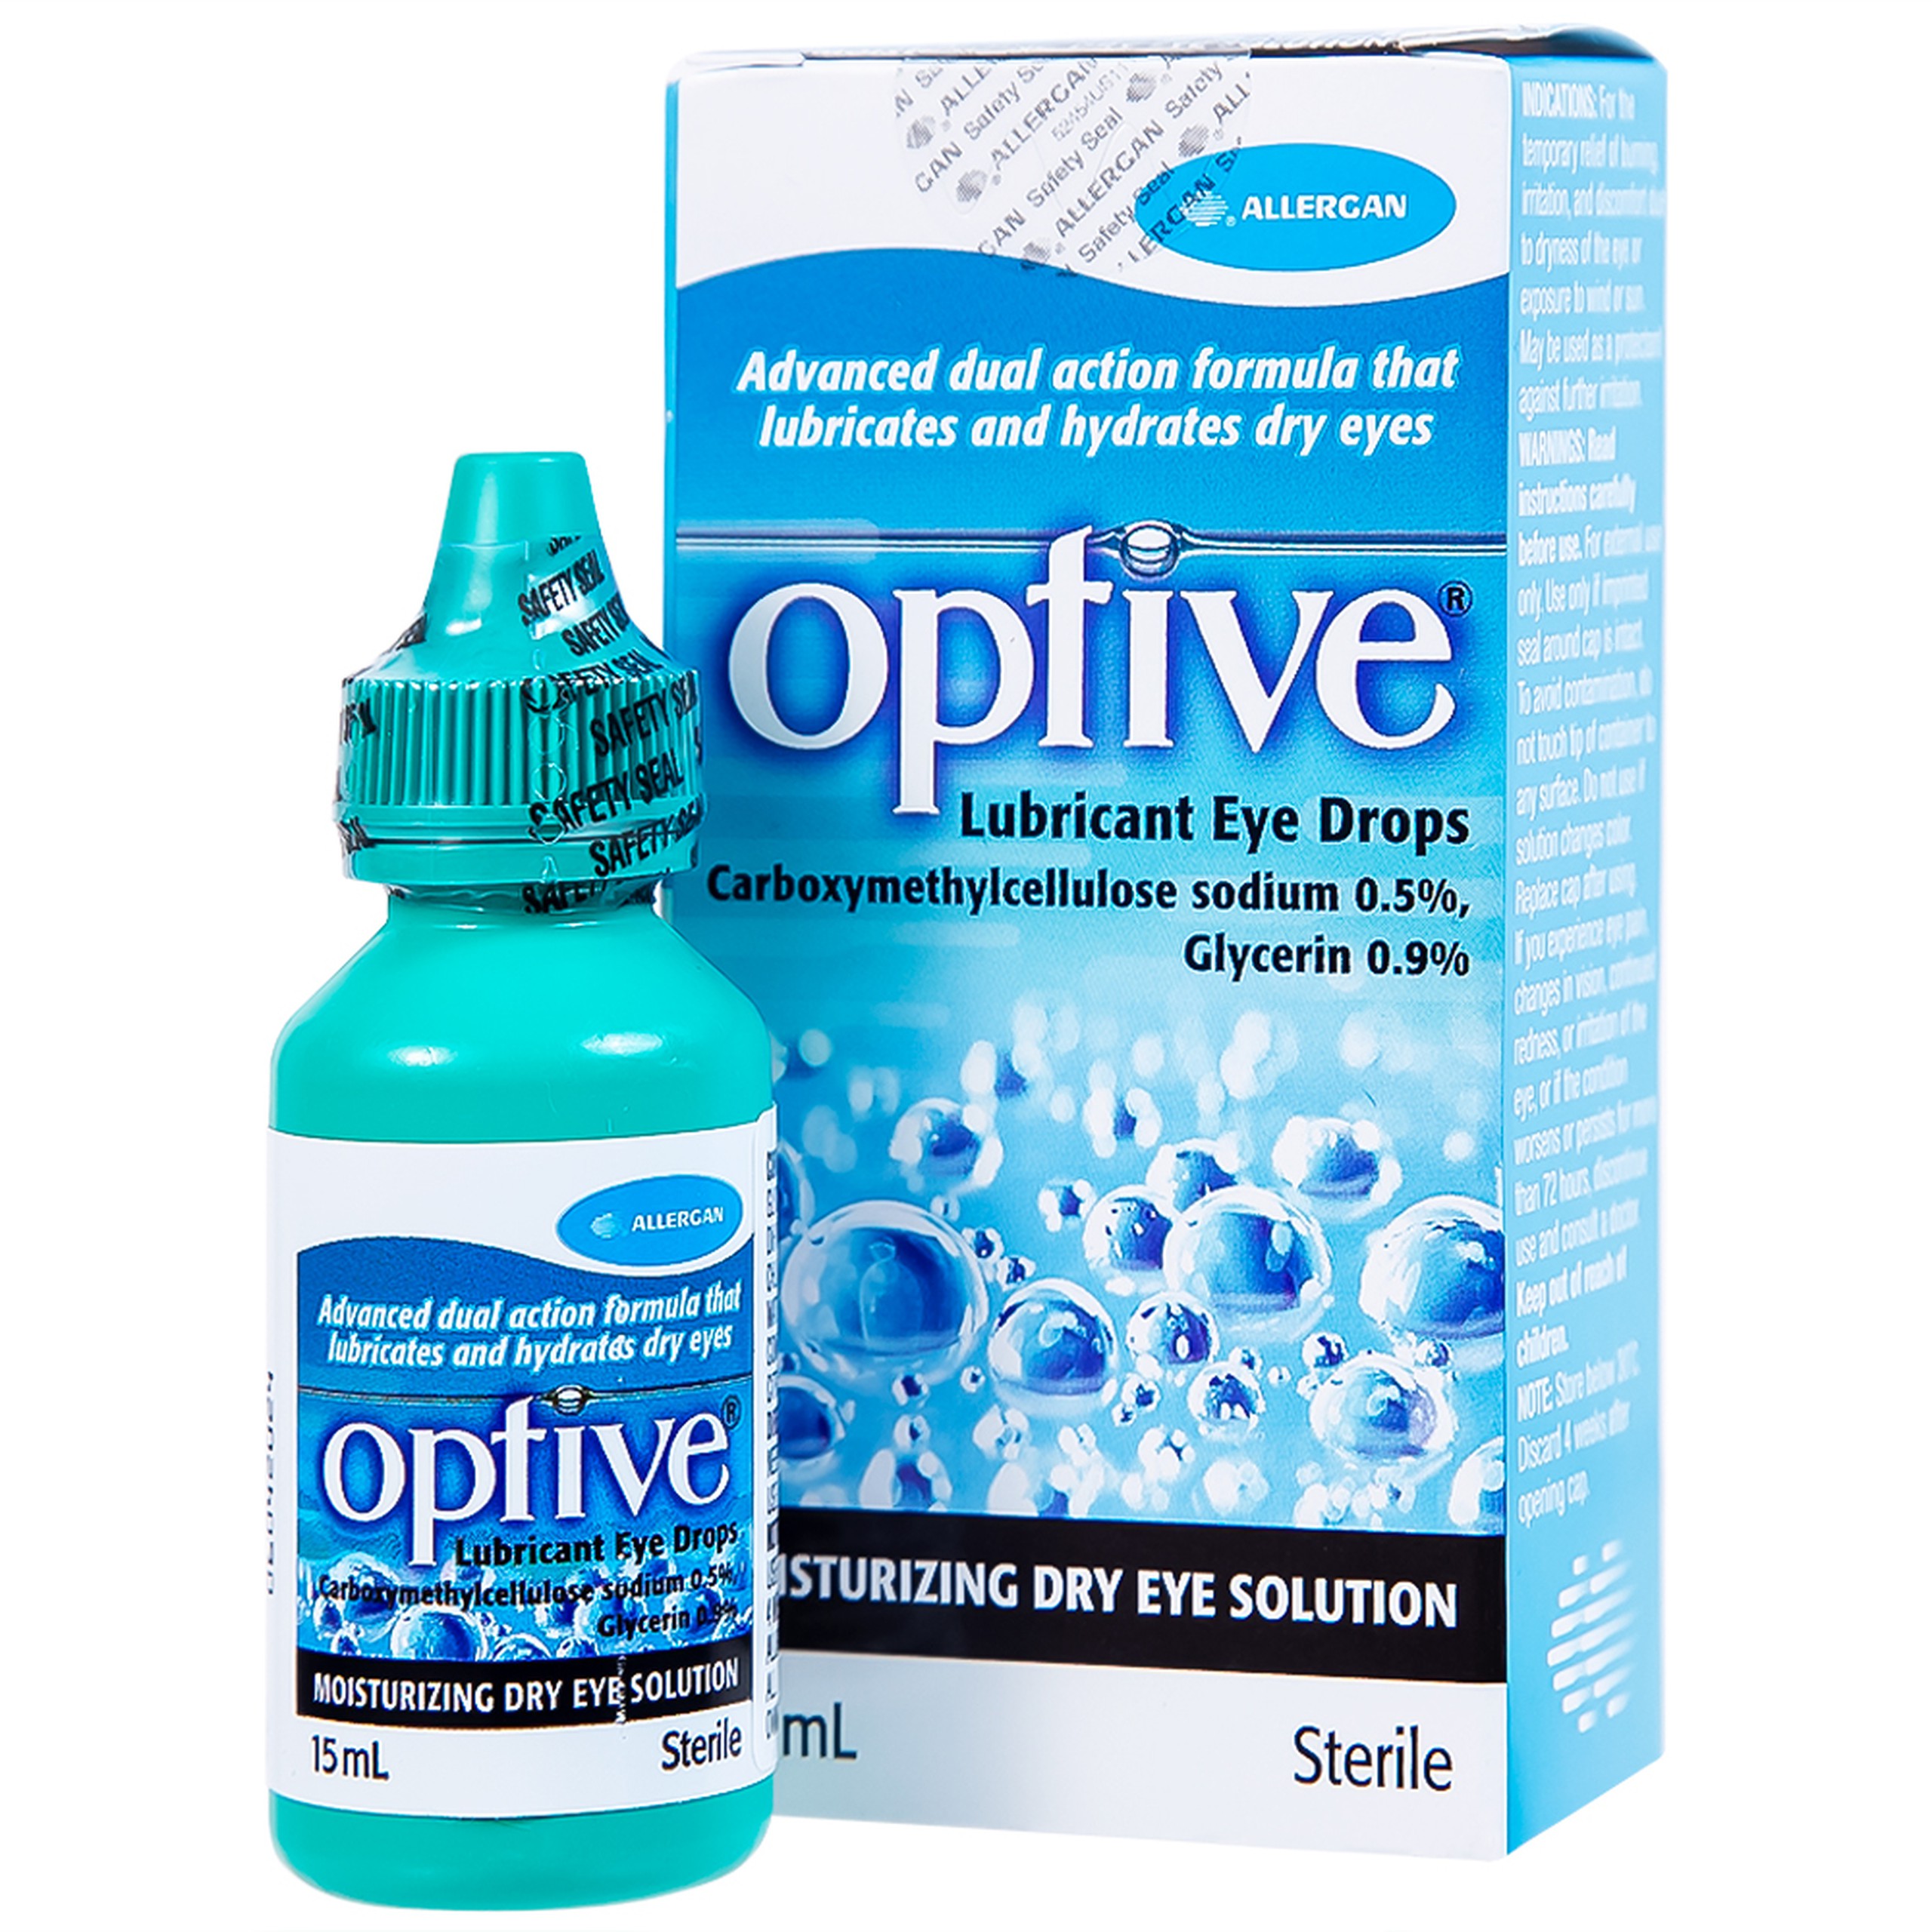 Thuốc nhỏ mắt Optive Allergan giảm nóng, kích ứng và khó chịu do khô mắt (15ml)